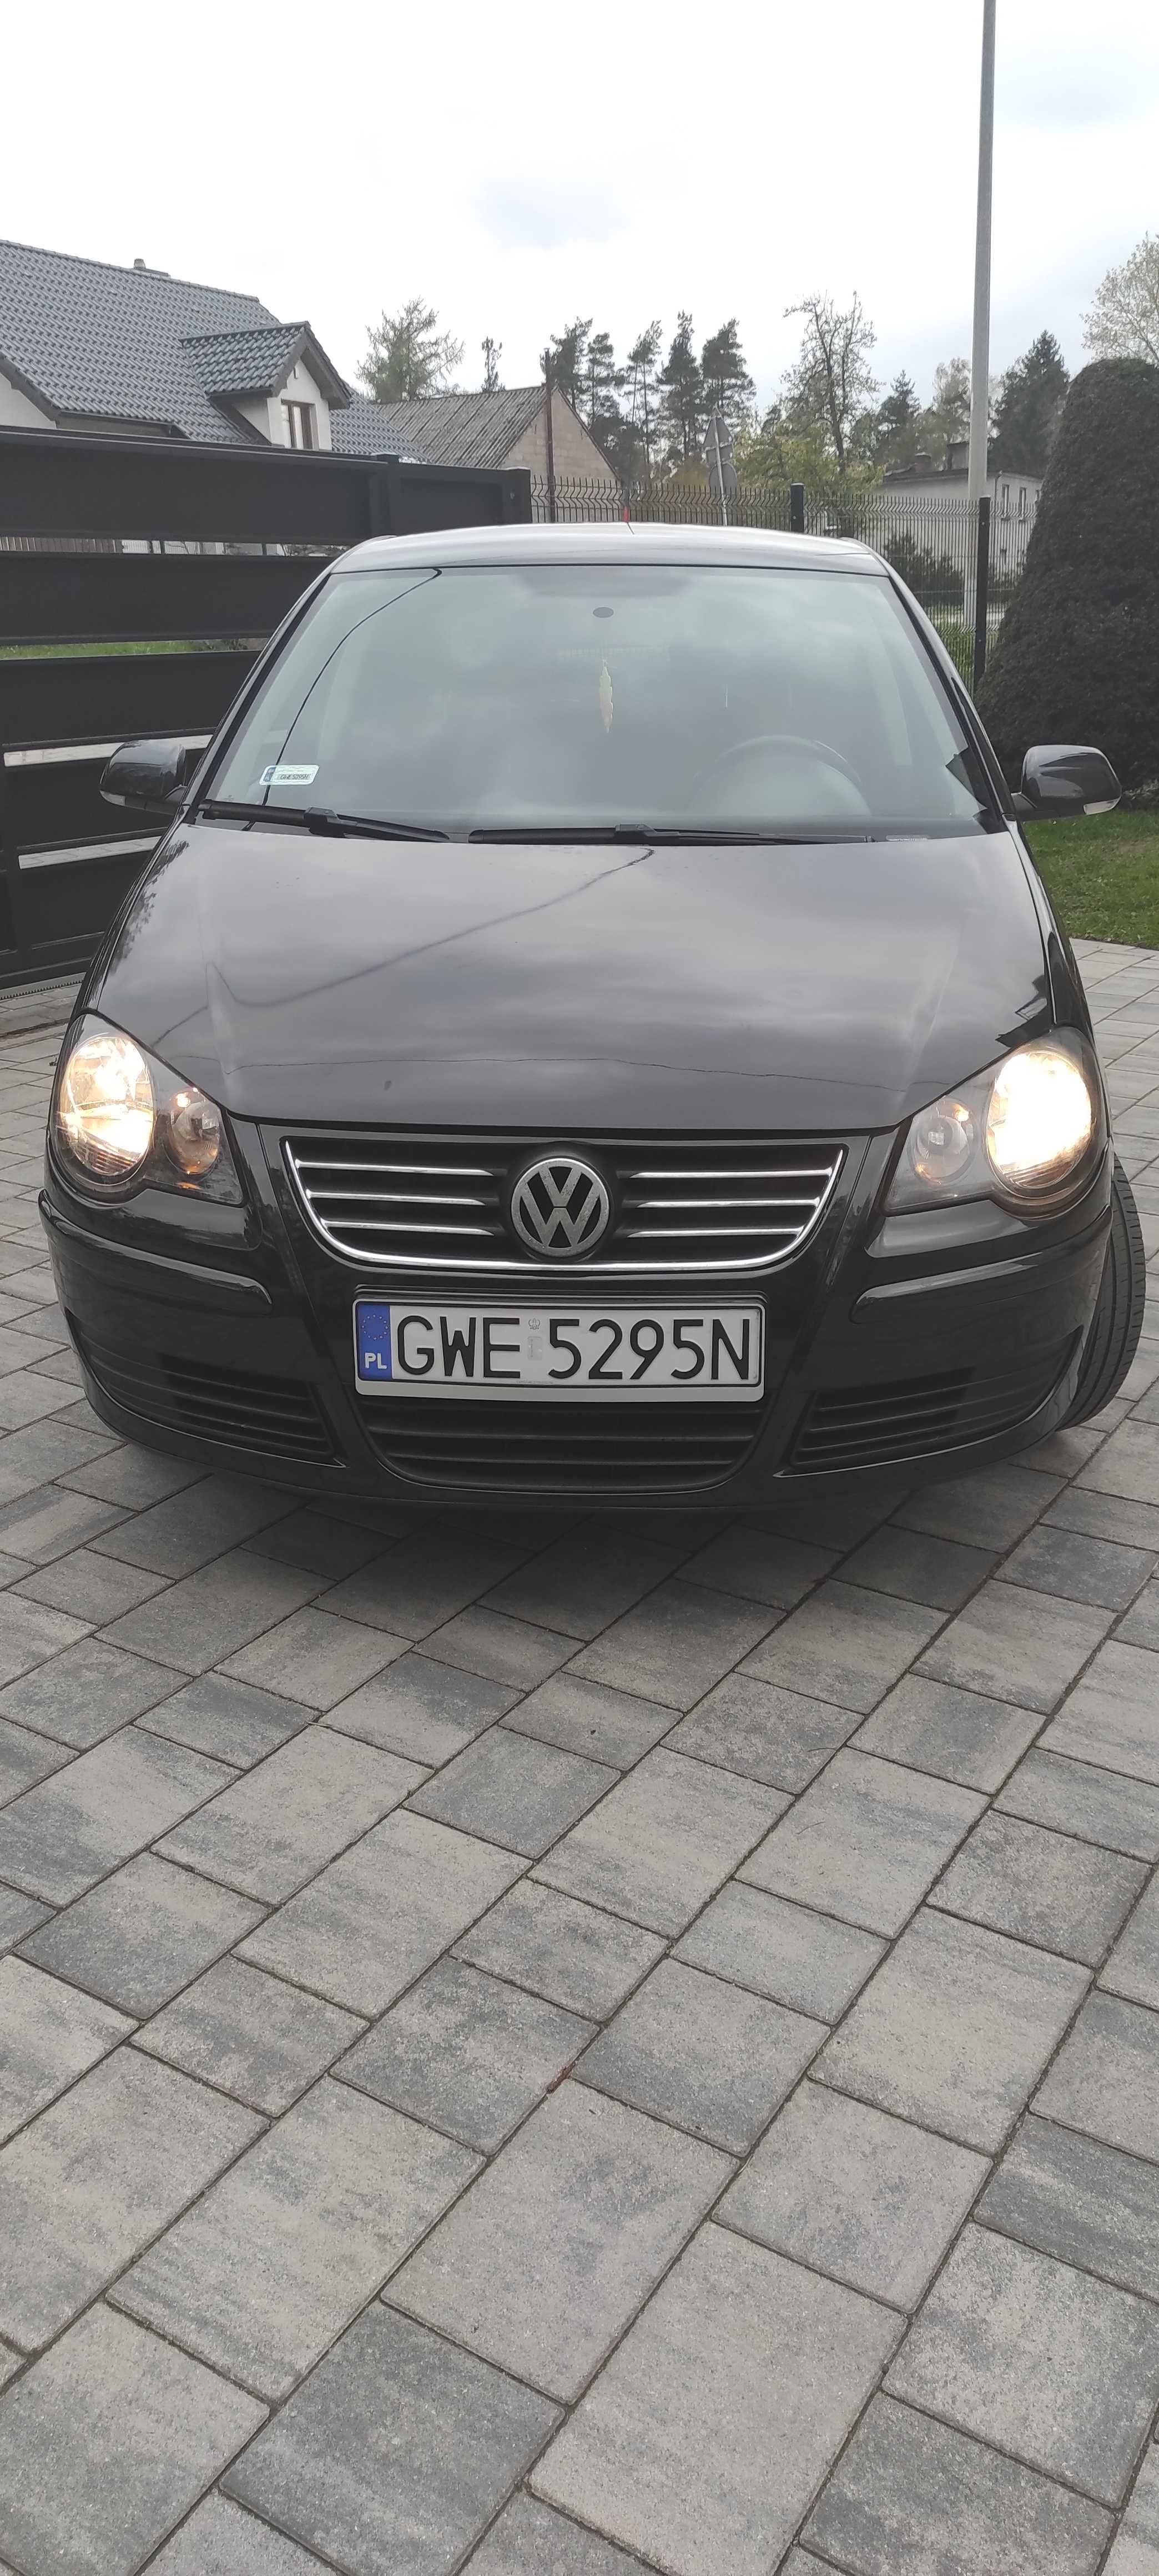 Volkswagen Polo 2007 1.2 benzyna przebieg 101500 km